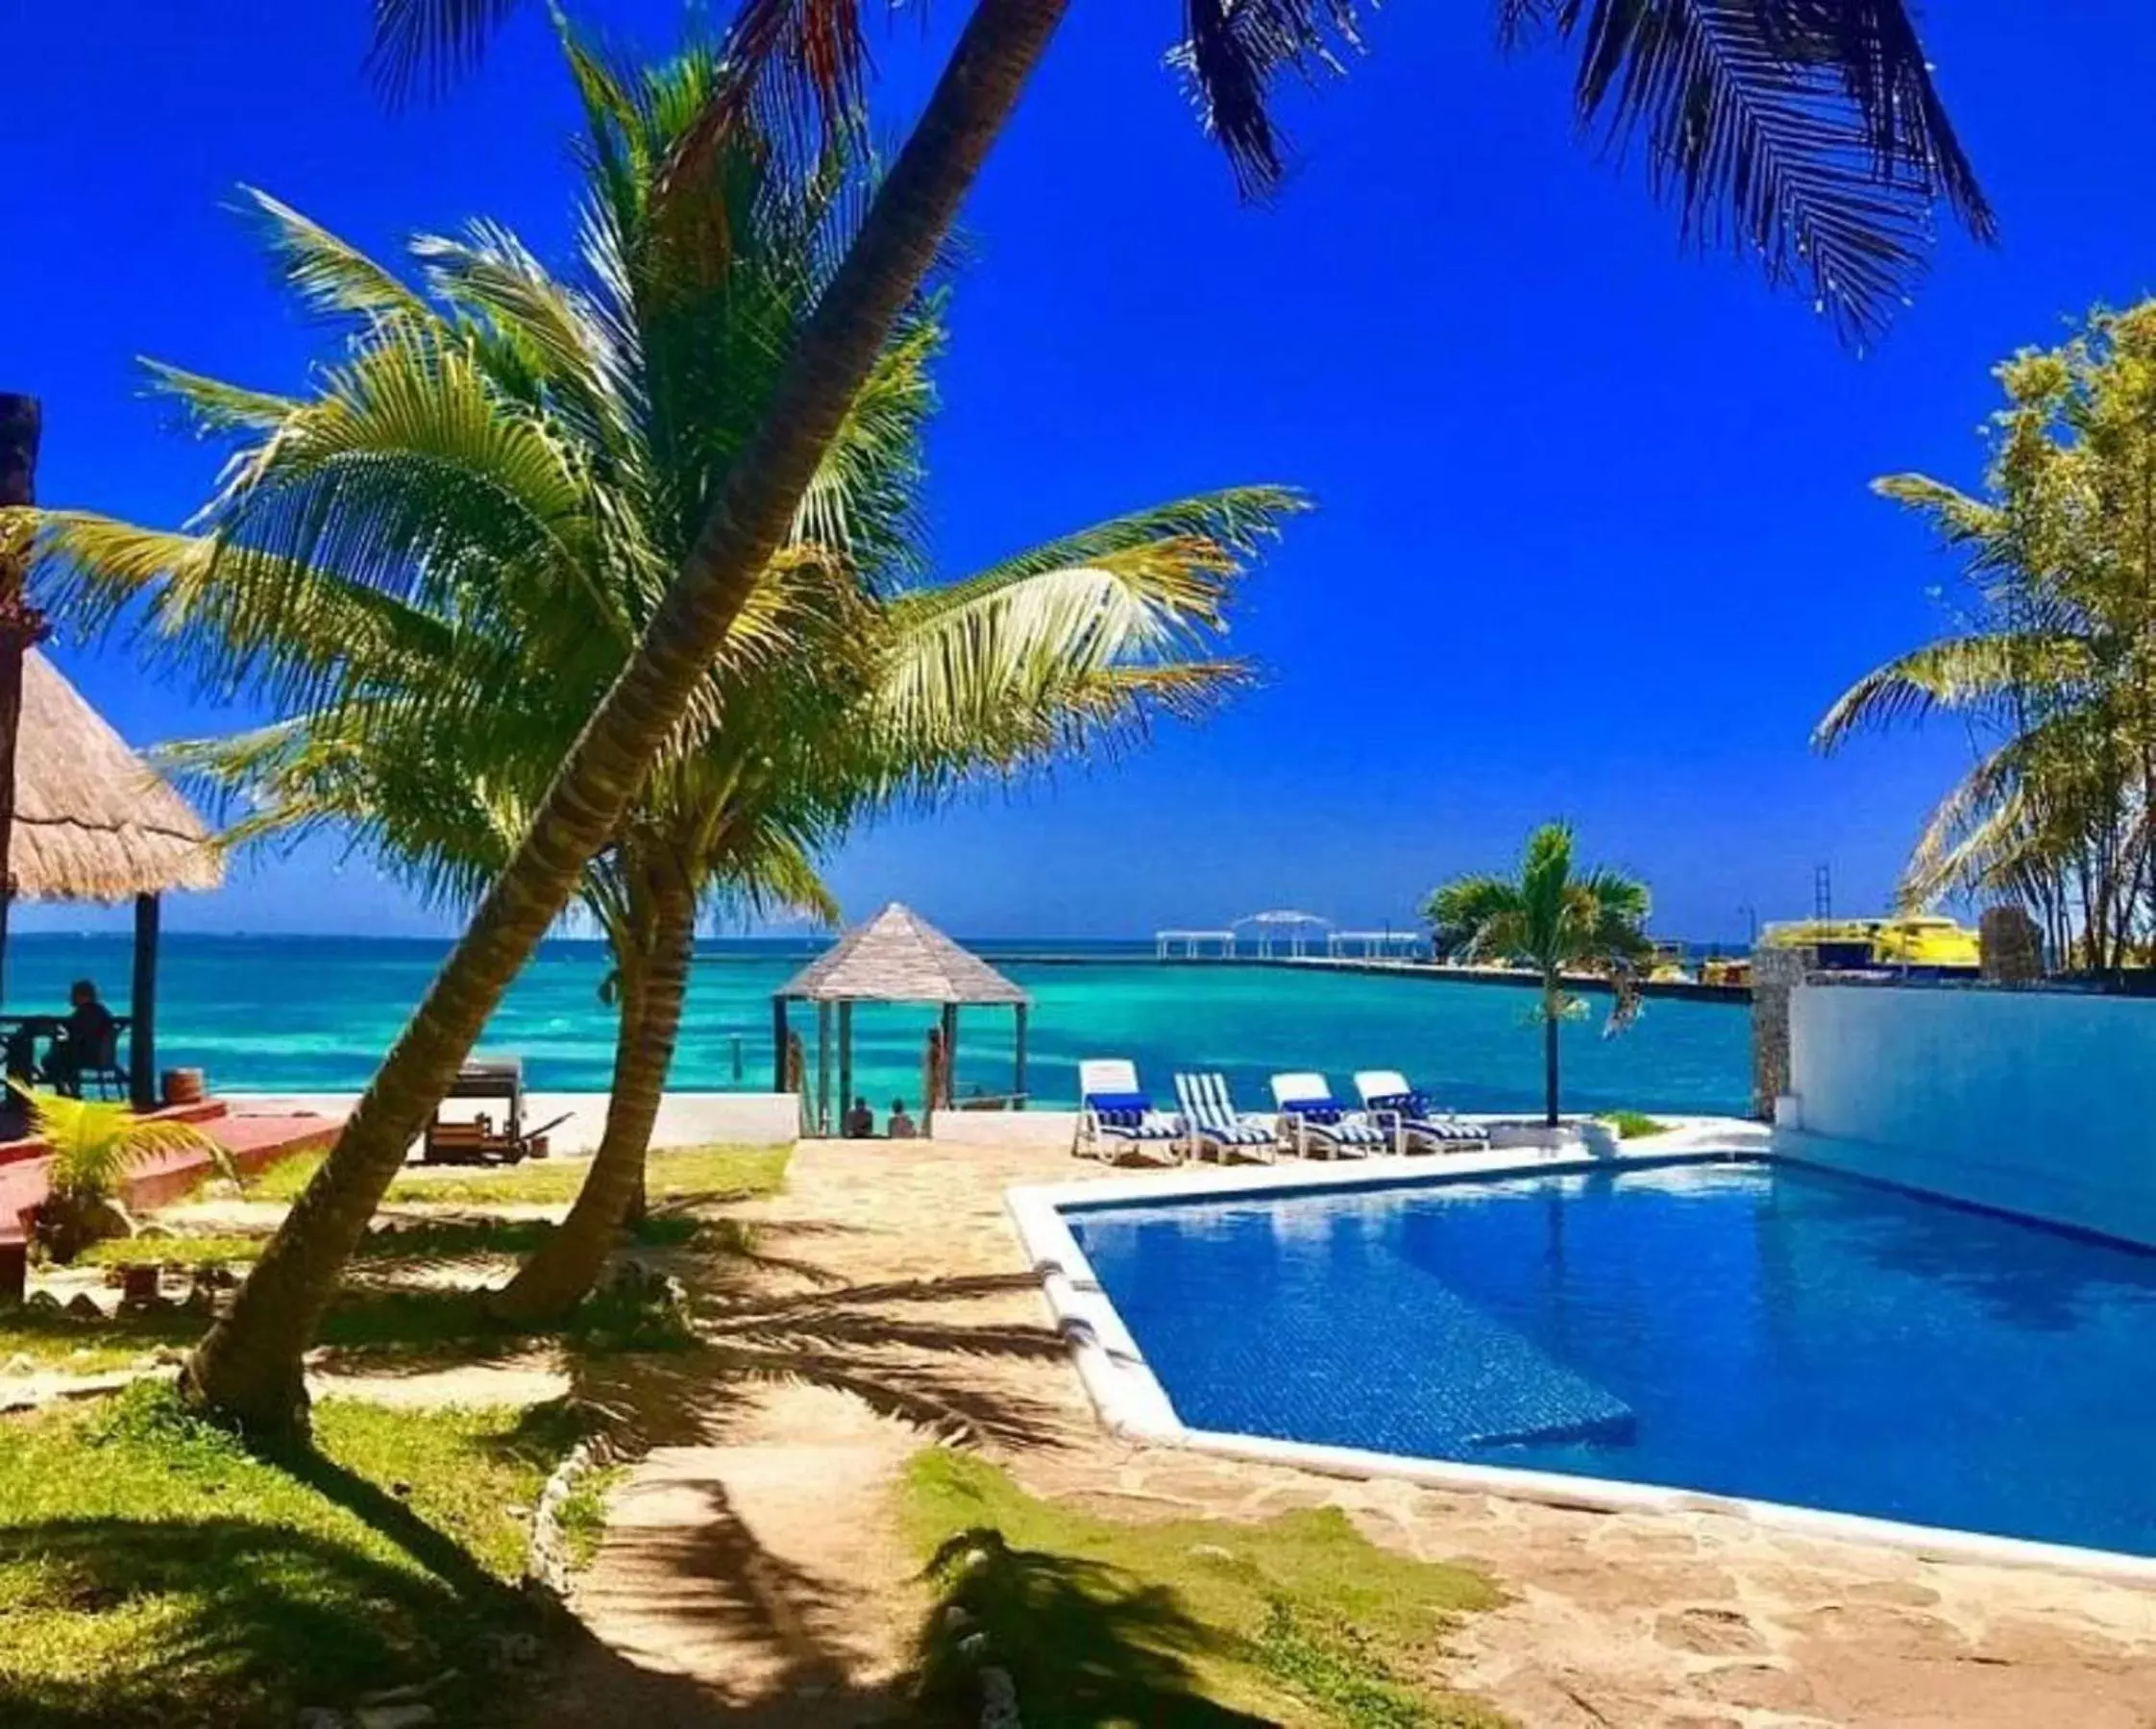 Swimming Pool in Casa Caribe Cancun